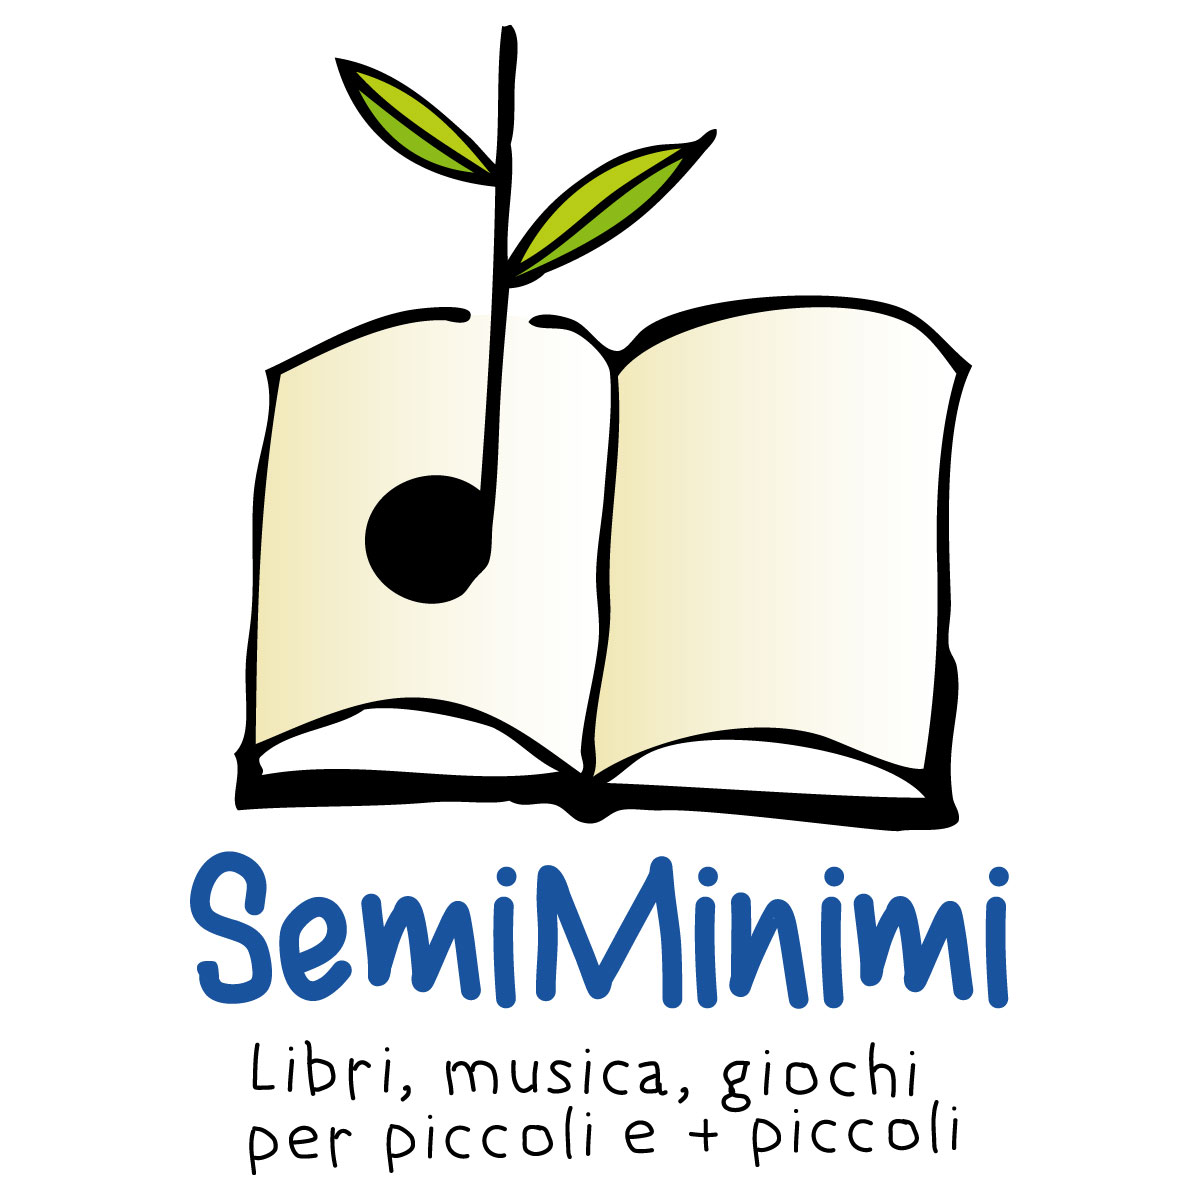 SemiMinimi - Libri, musica, giochi per piccoli e + piccoli